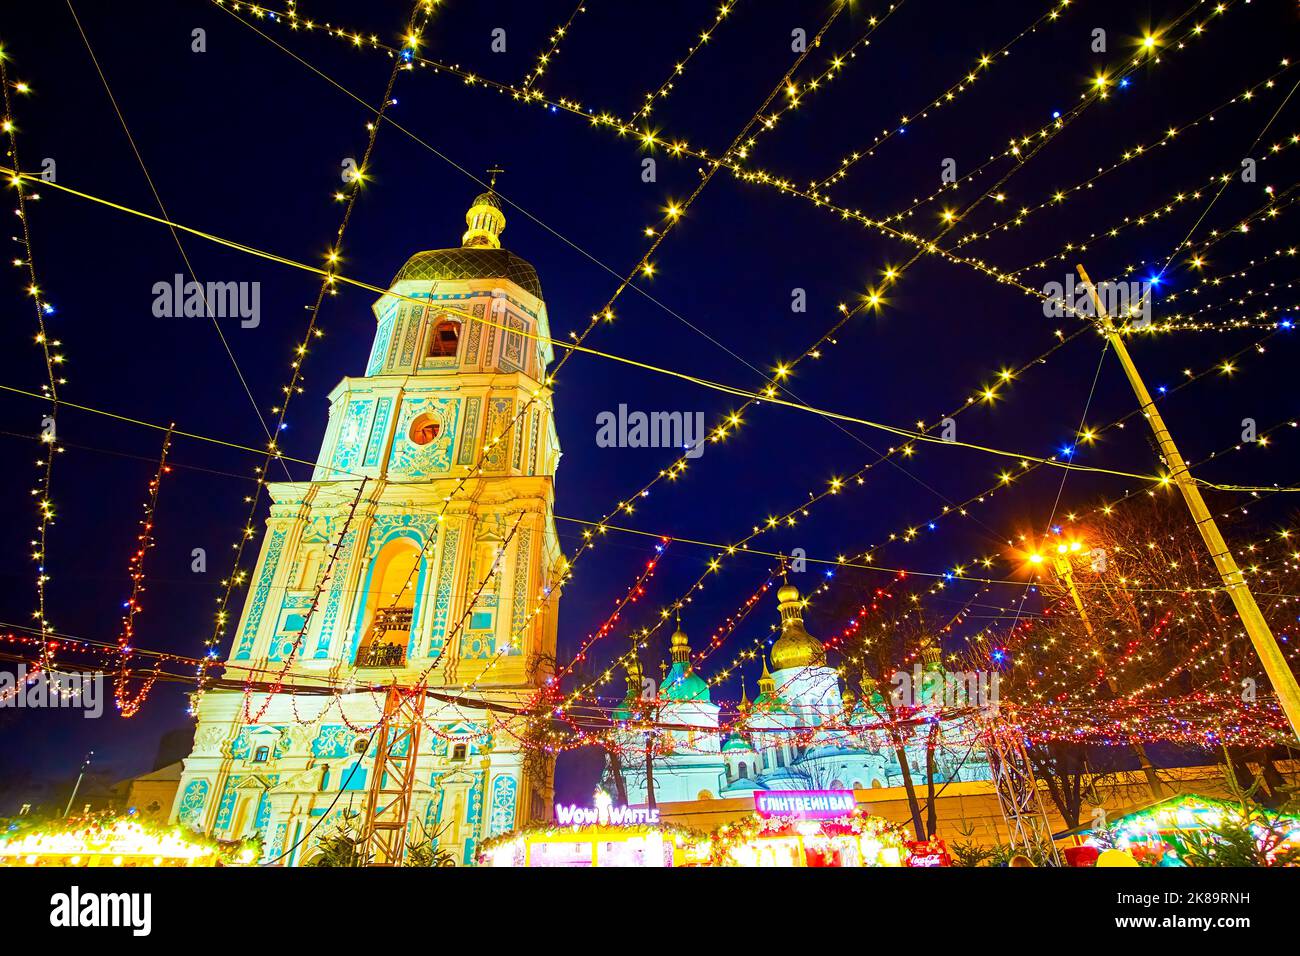 KIEV, UCRANIA - 28 DE DICIEMBRE de 2021: Campanario de la Catedral de Santa Sofía detrás de las guirnaldas de Navidad, el 28 de diciembre en Kiev, Ucrania Foto de stock